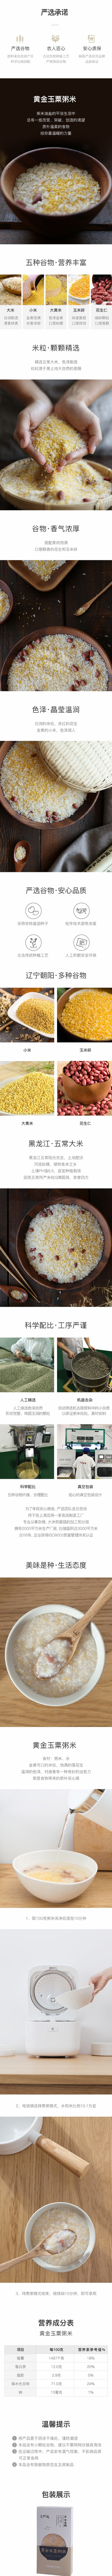 【CHINA DIRECT MAIL】YANXUAN Gold Mixed Rice 500g